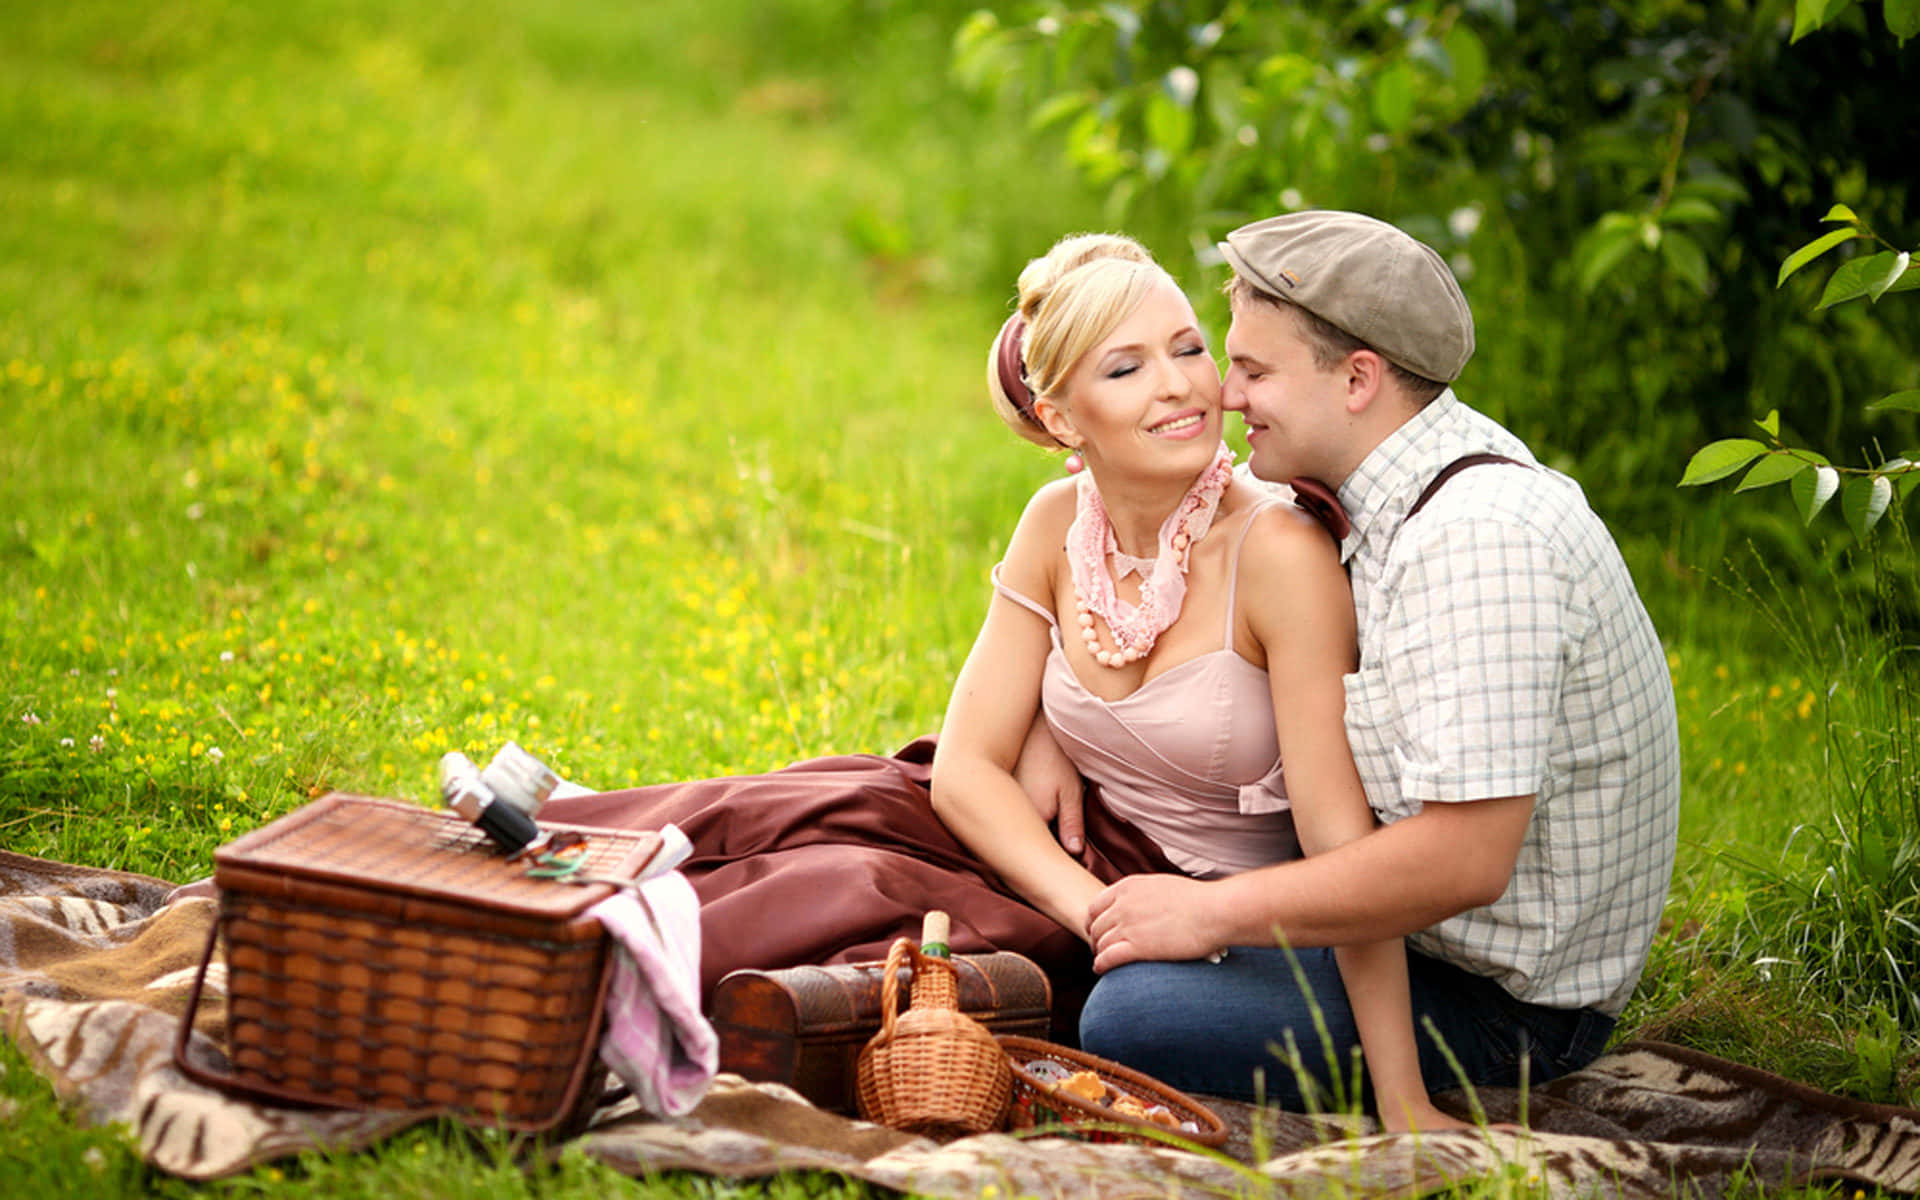 Пикник с мужем. Фотосессия пикник на природе. Парень с девушкой на пикнике. Романтичный пикник на природе. Фотосессия пикник пара.